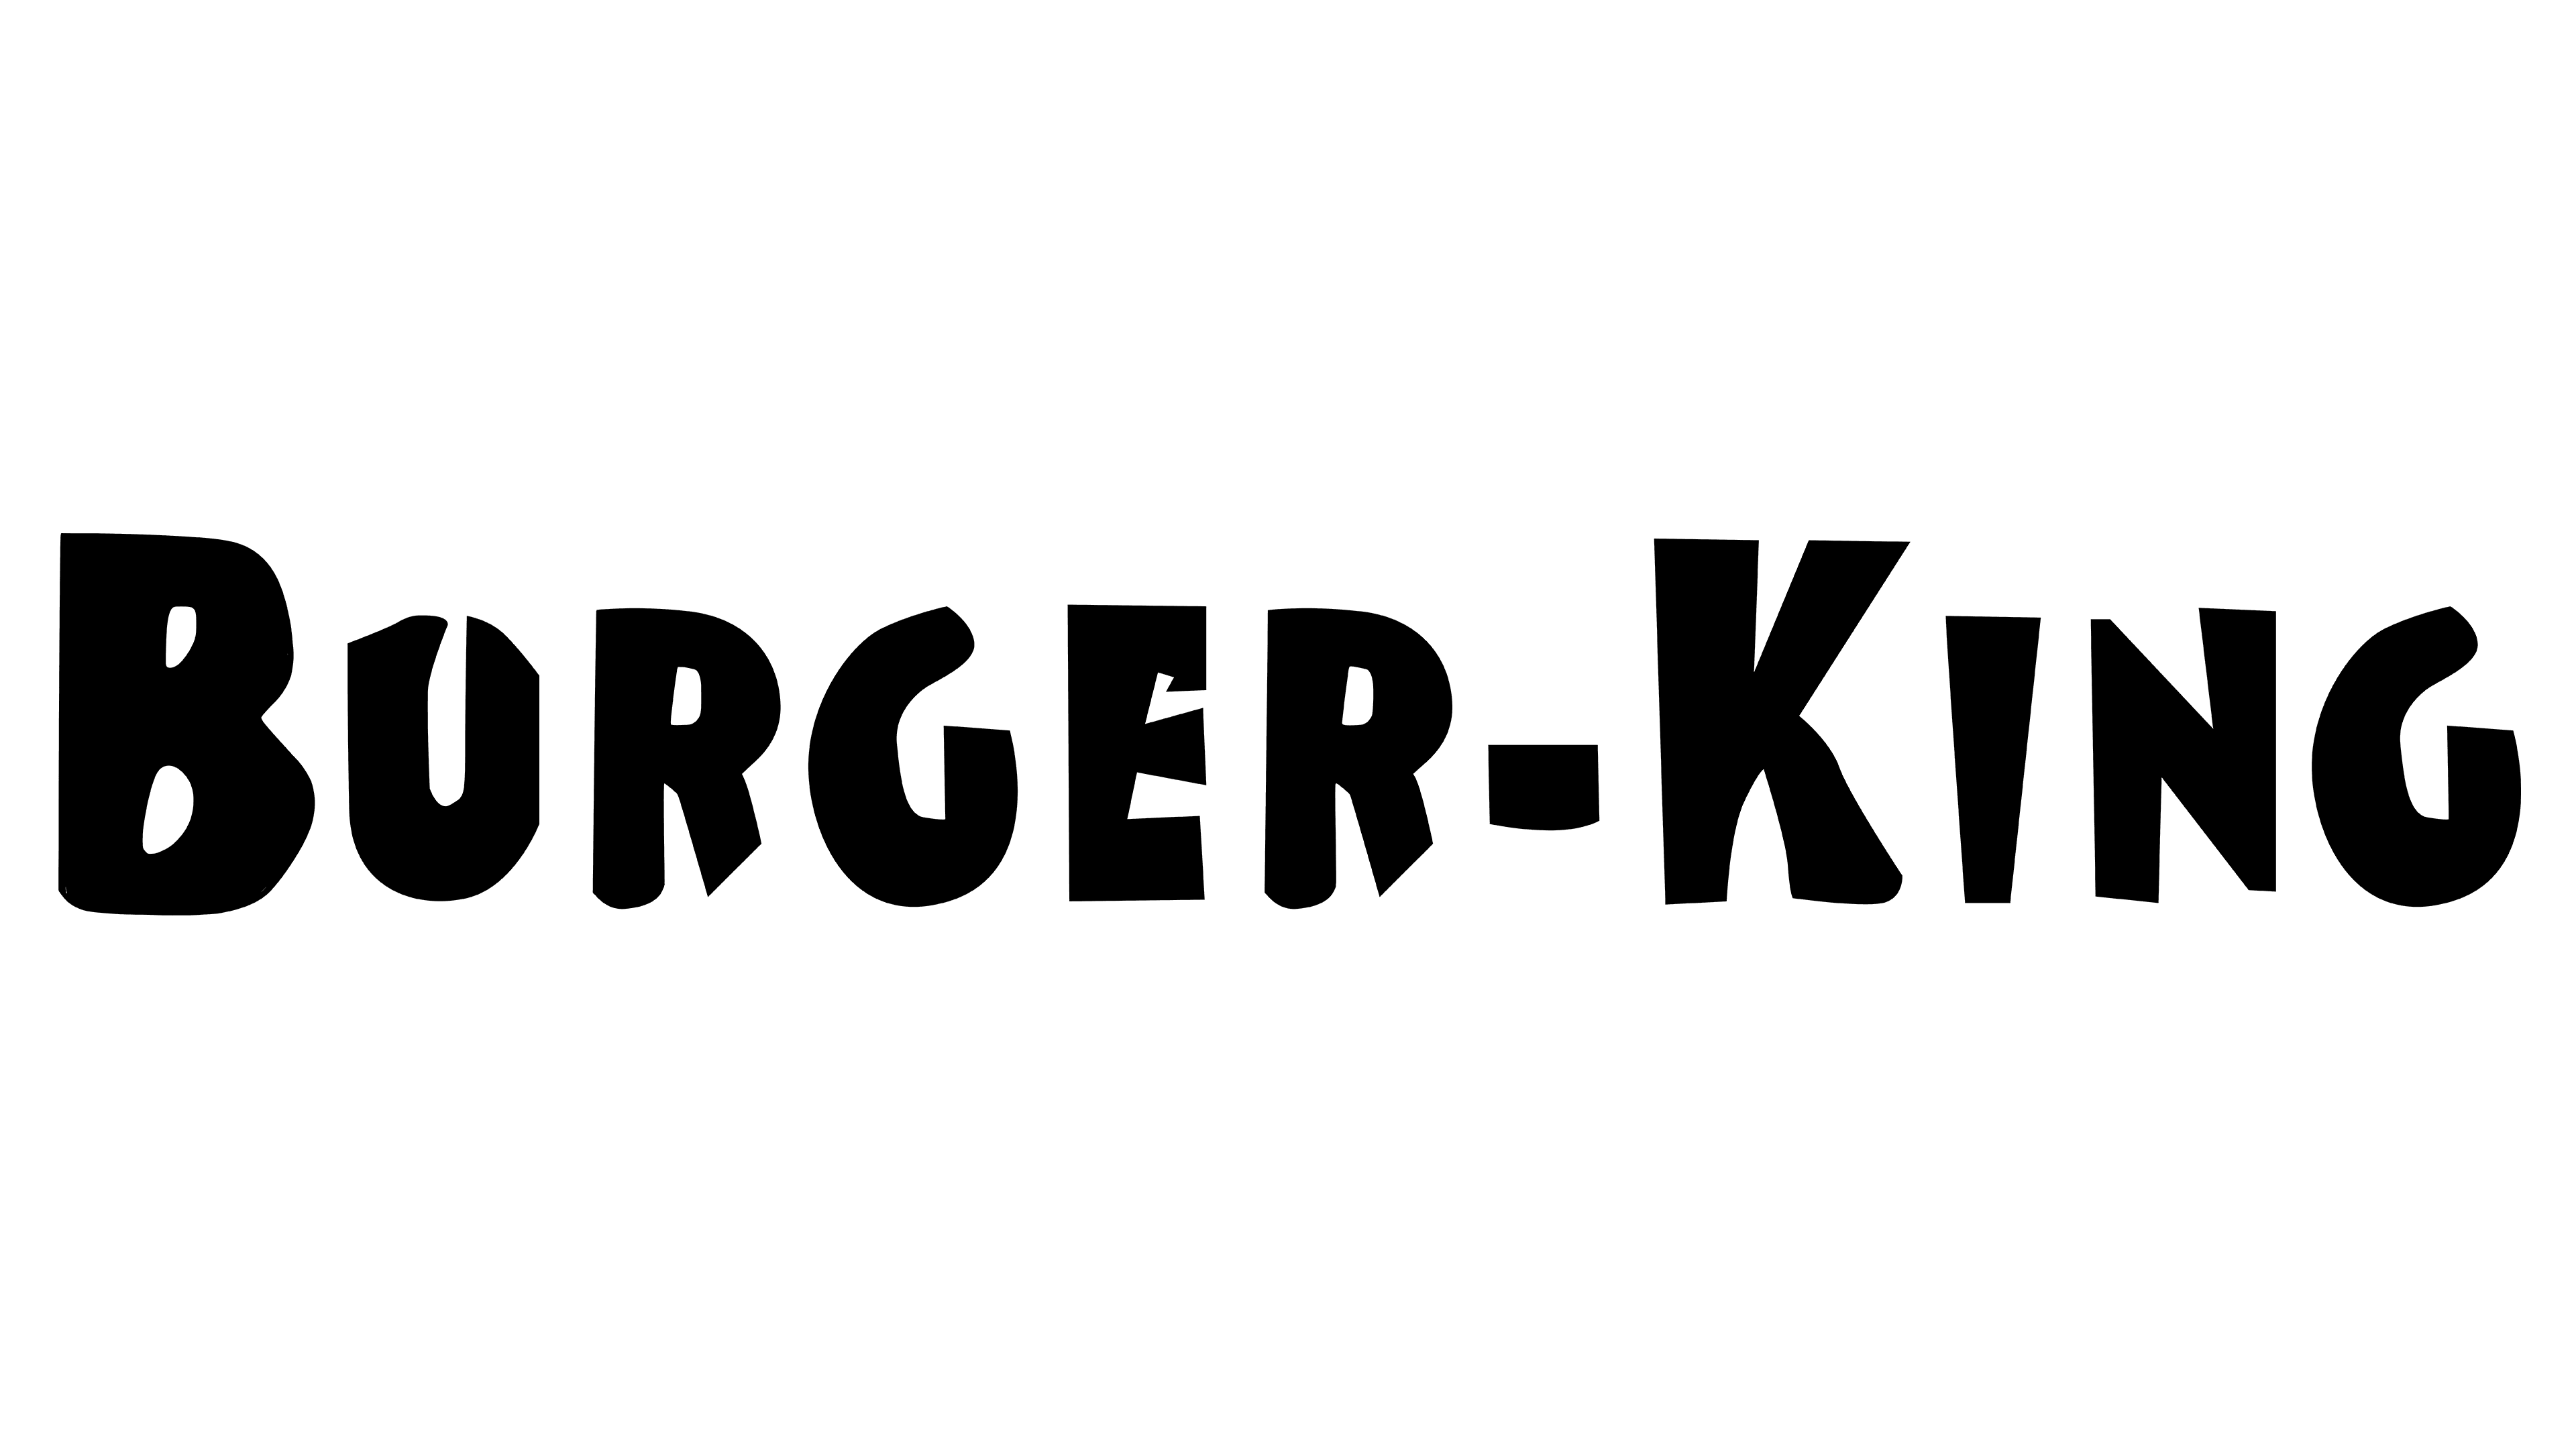 Logo orange burgerking burger - Social media & Logos Icons